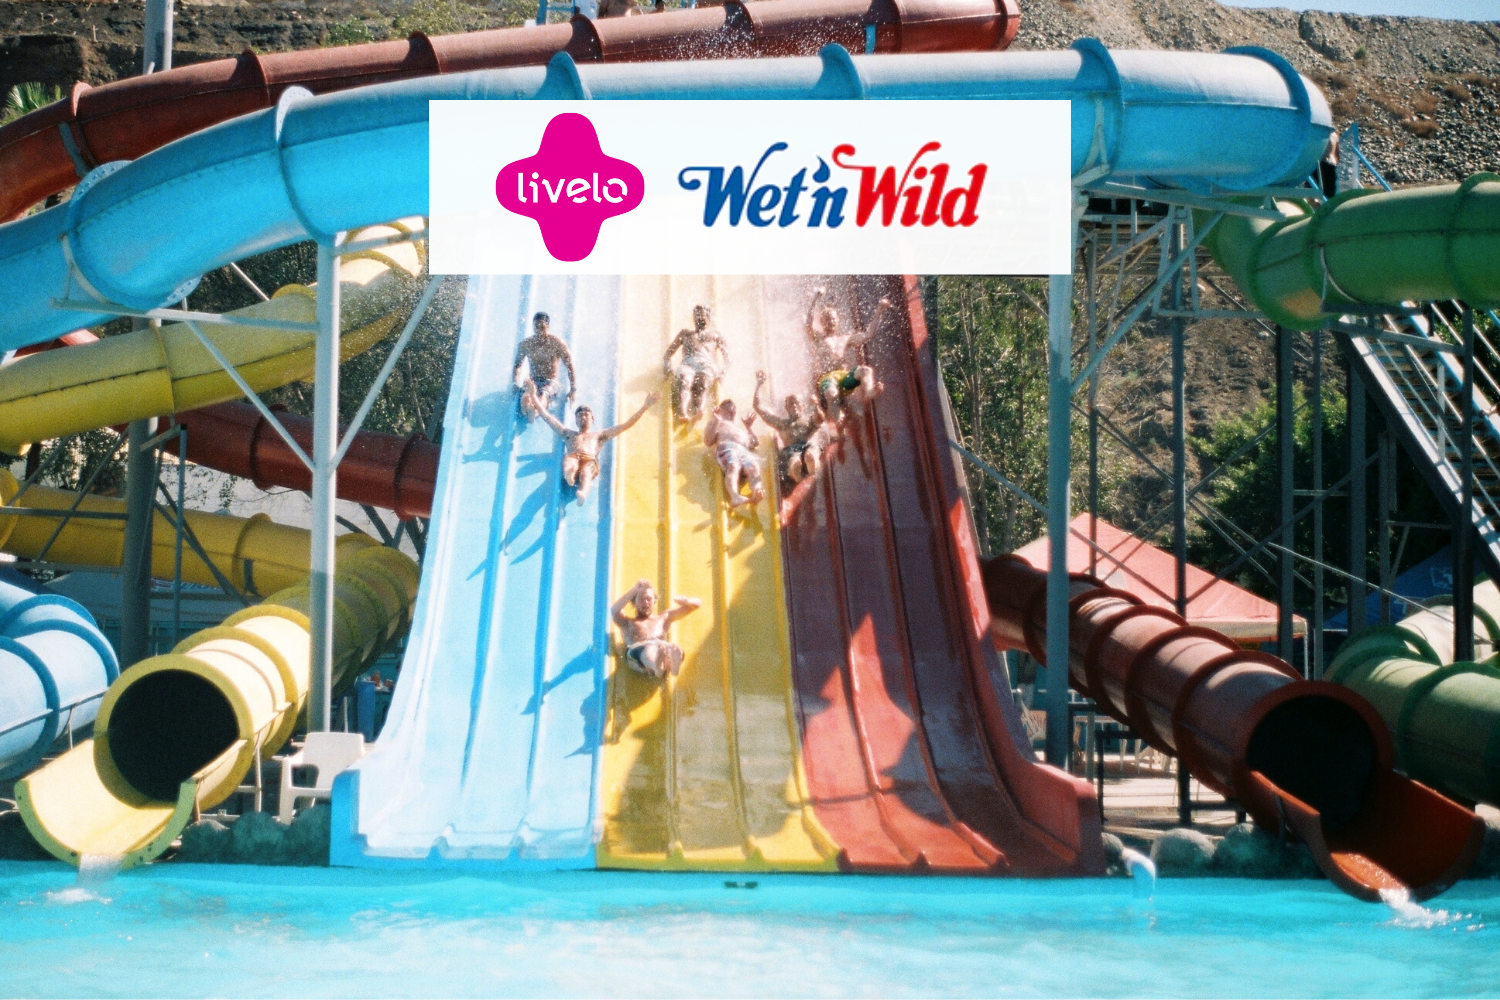 Escorregadeira de parque aquático com logo Livelo e Wet1n Wild 8 pontos Livelo